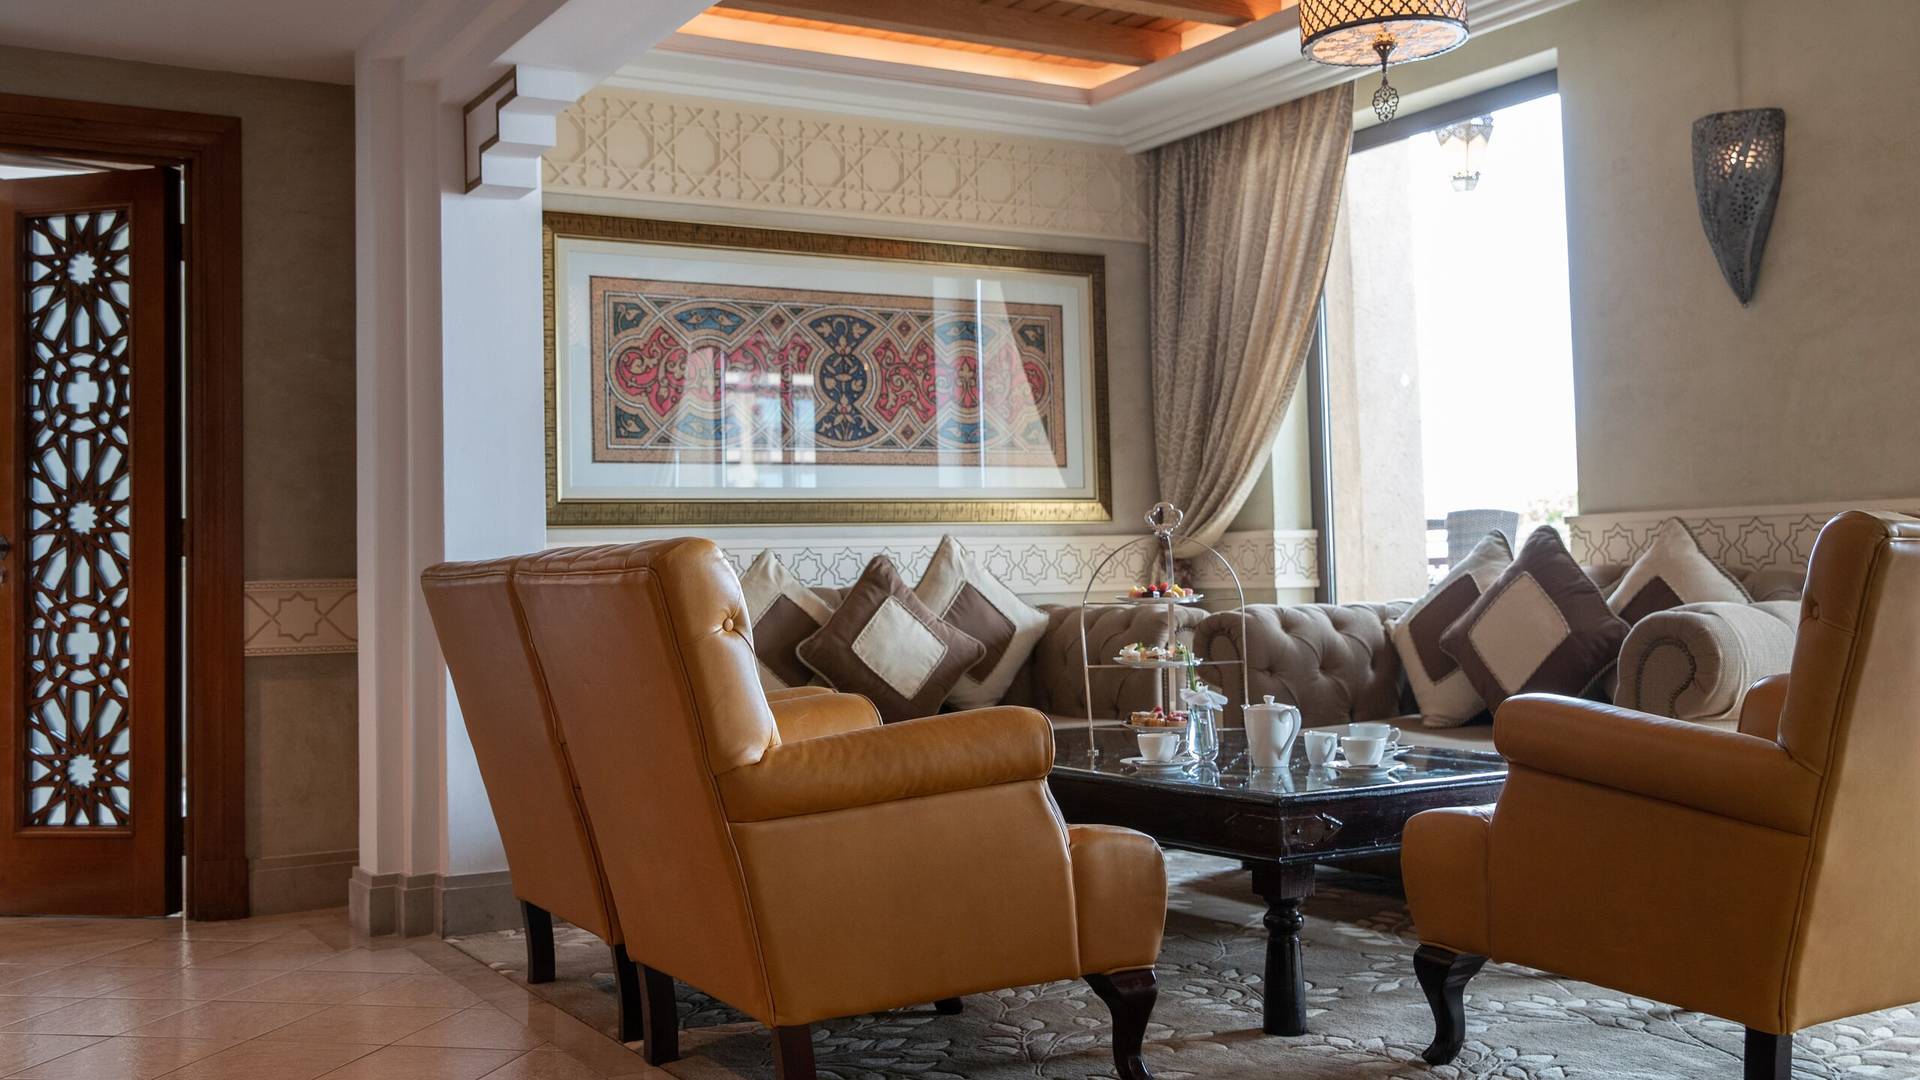 Jumeirah Mina A'Salam Executive Club Lounge Chairs